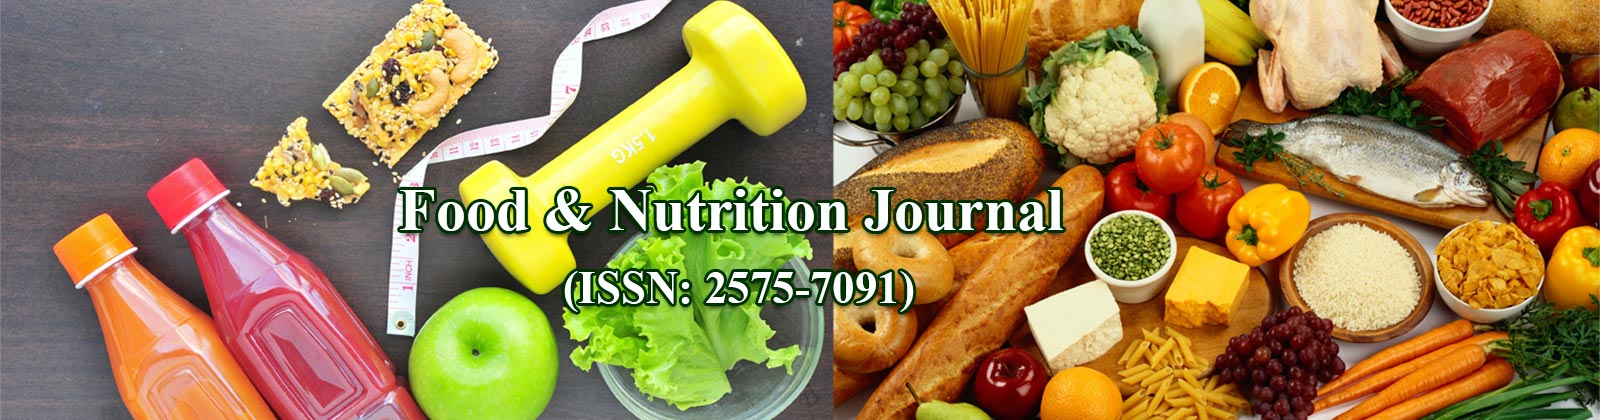 Food & Nutrition Journal (ISSN: 2575-7091) - Gavin Publishers